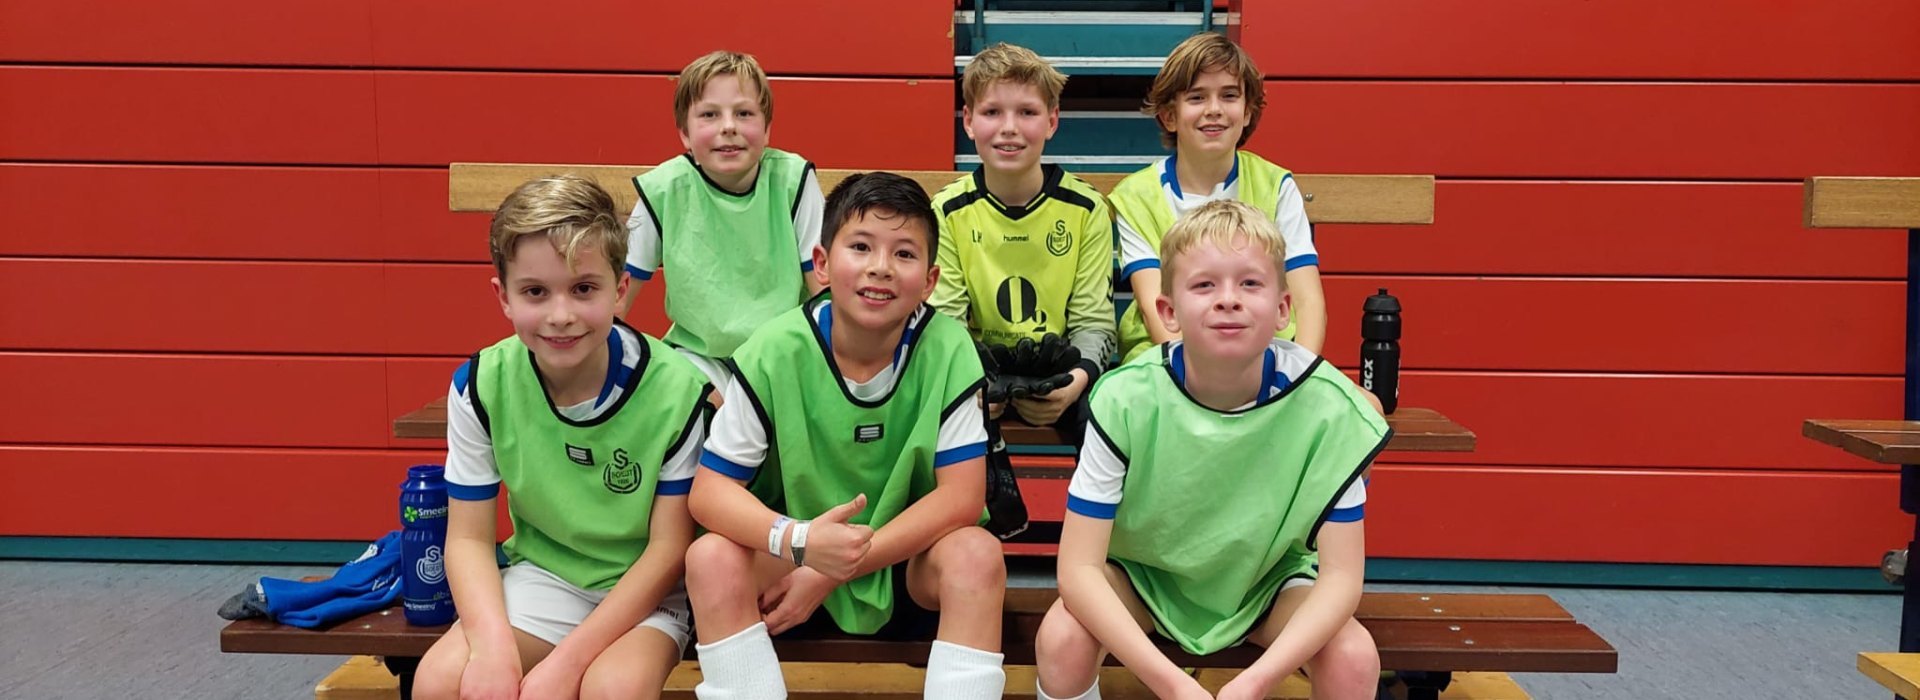 Zaalvoetbal voor jeugd